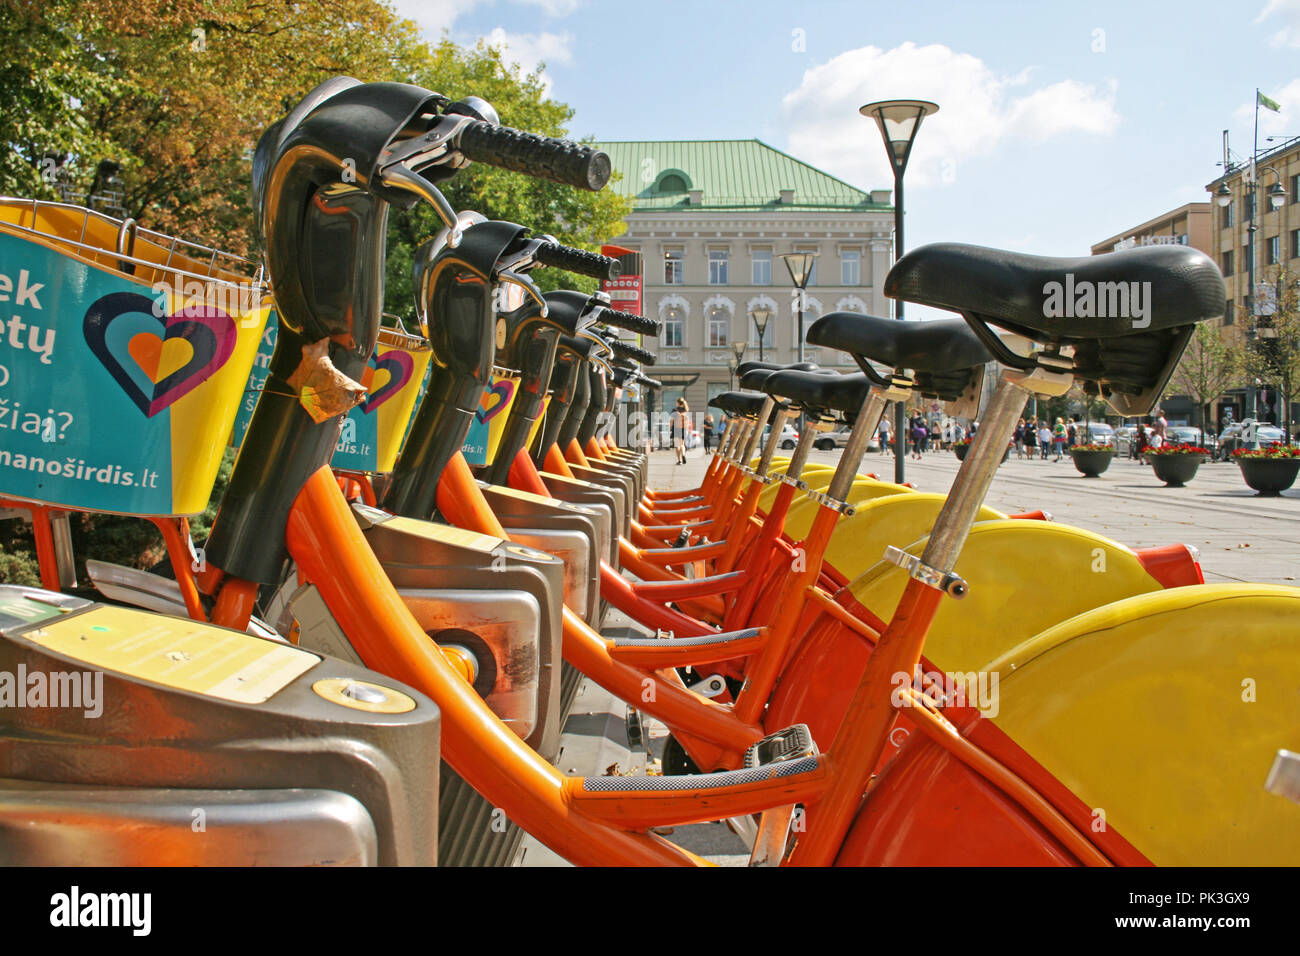 Stadt Fahrradverleih - eine Reihe von Fahrräder mieten als Teil einer neuen Regelung zu "Pedal Power' fördern geparkt Stockfoto